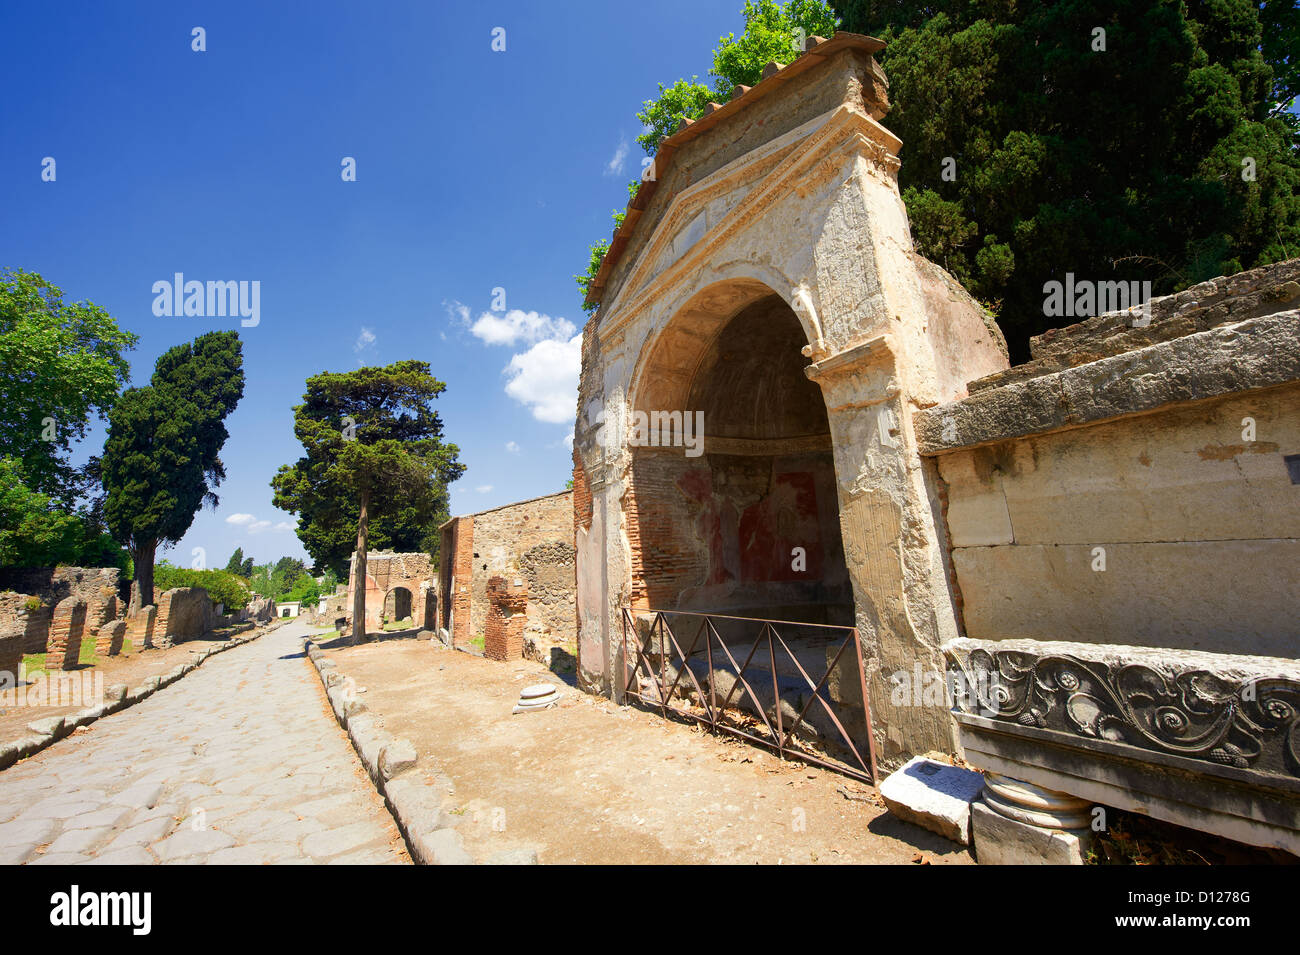 La nécropole romaine et mausolées dans la rue de tombes dans le cimetière d'Herculanum, Pompéi Banque D'Images